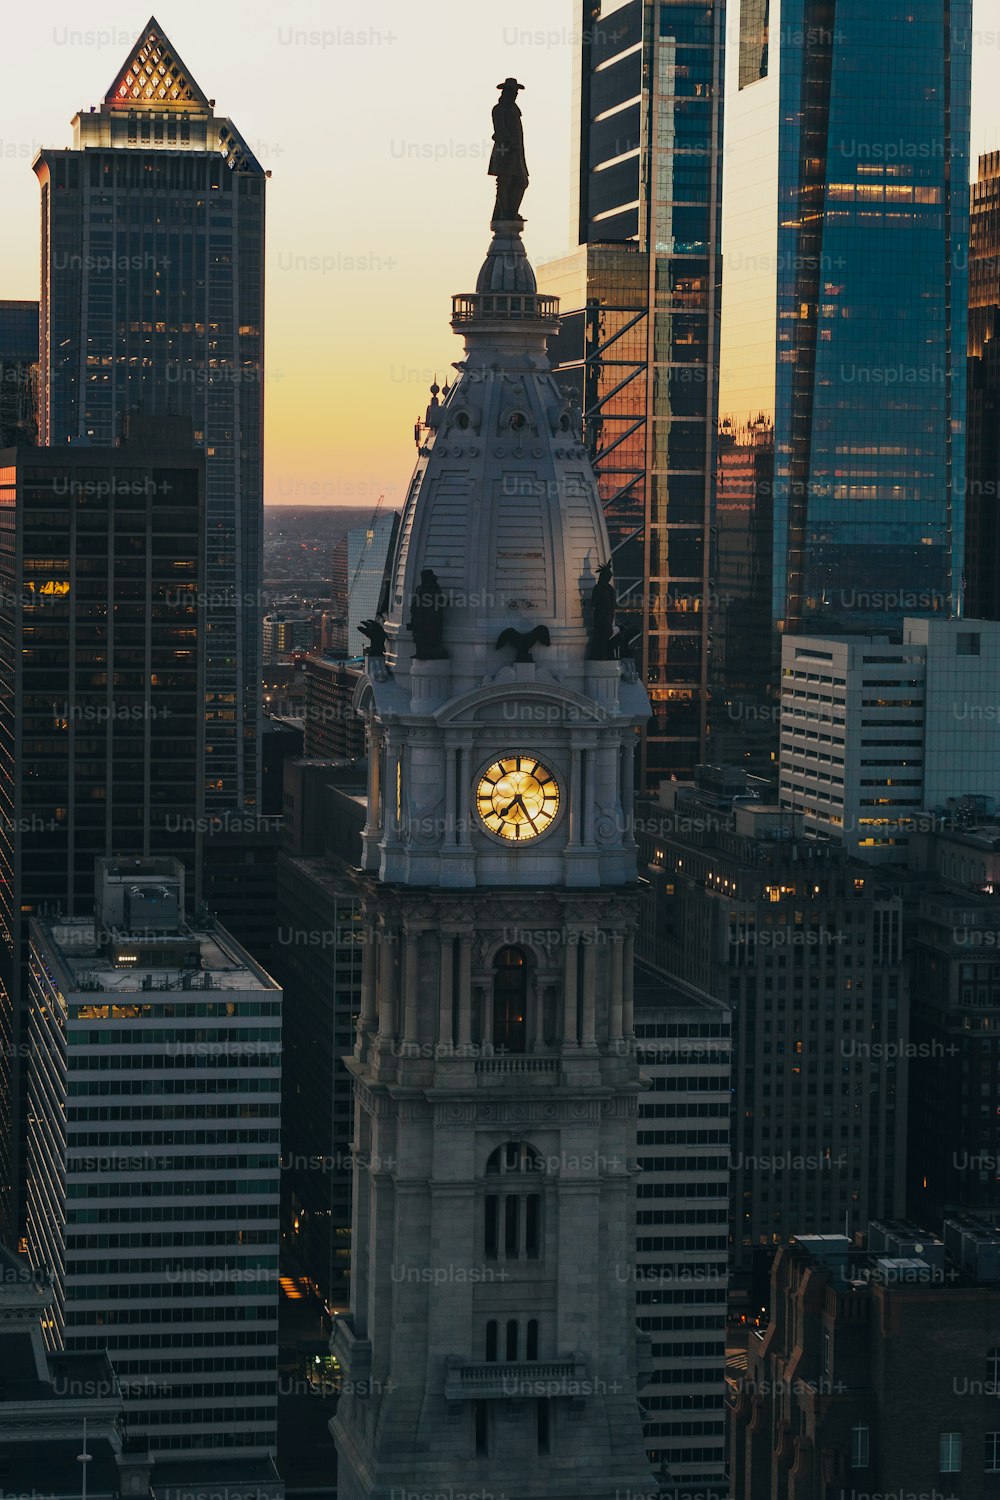 Eine Uhr auf einem Turm in einer Stadt